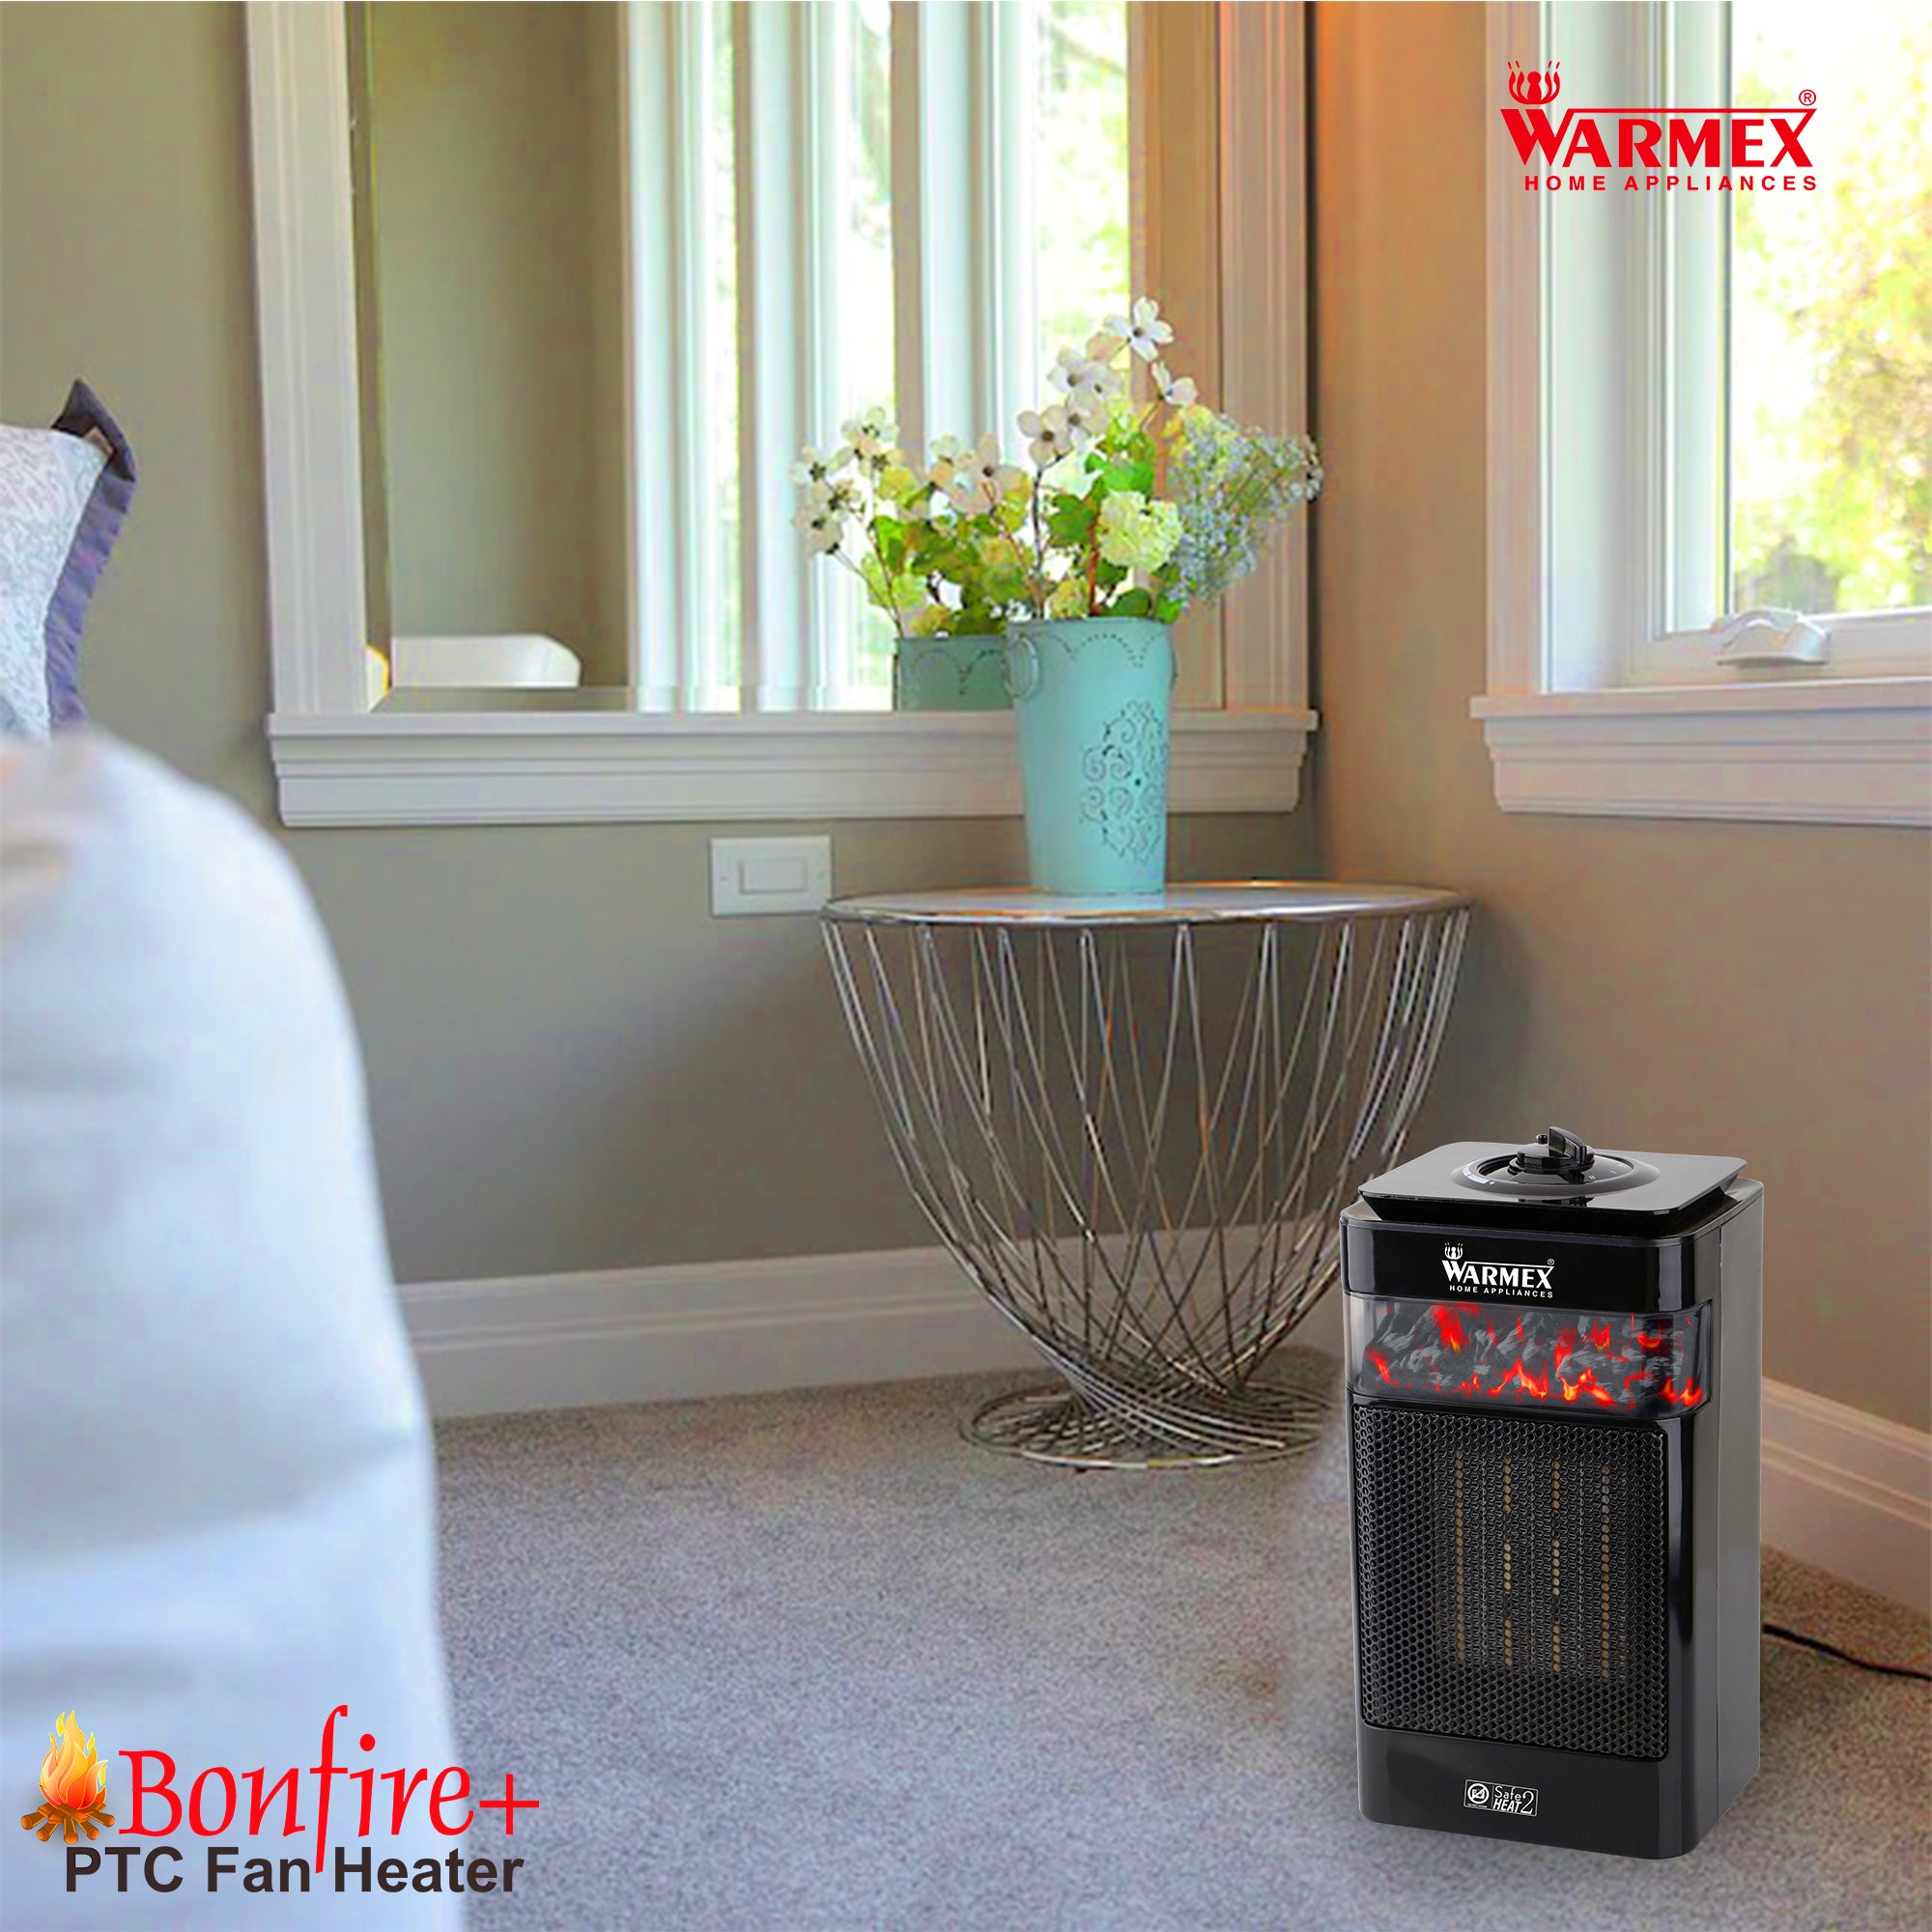 Warmex 750/1500 Watts Room Heater BONFIRE+